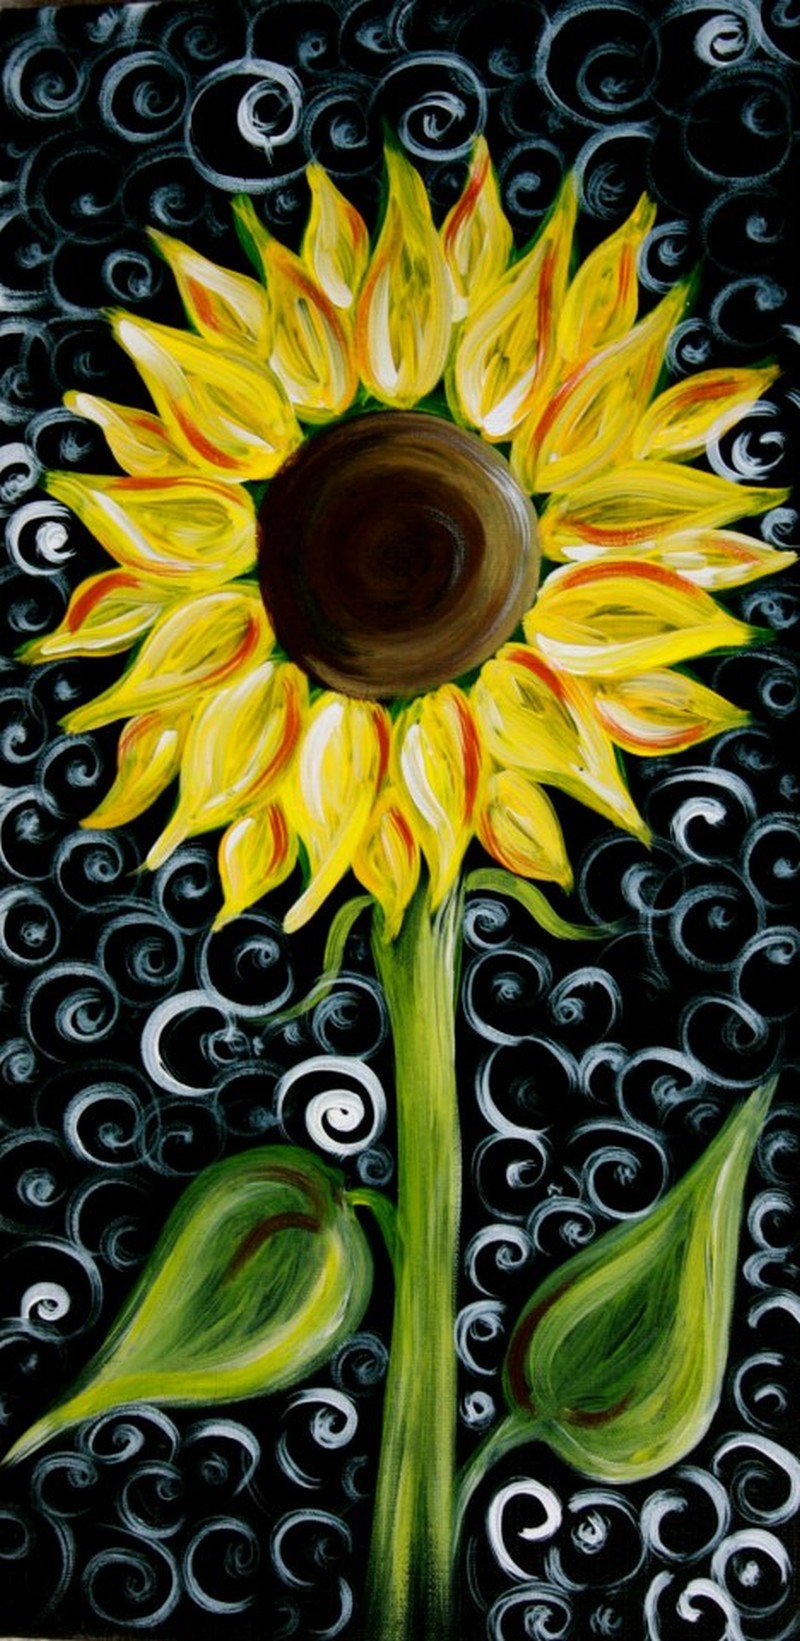 NEW! Swirly Sunflower